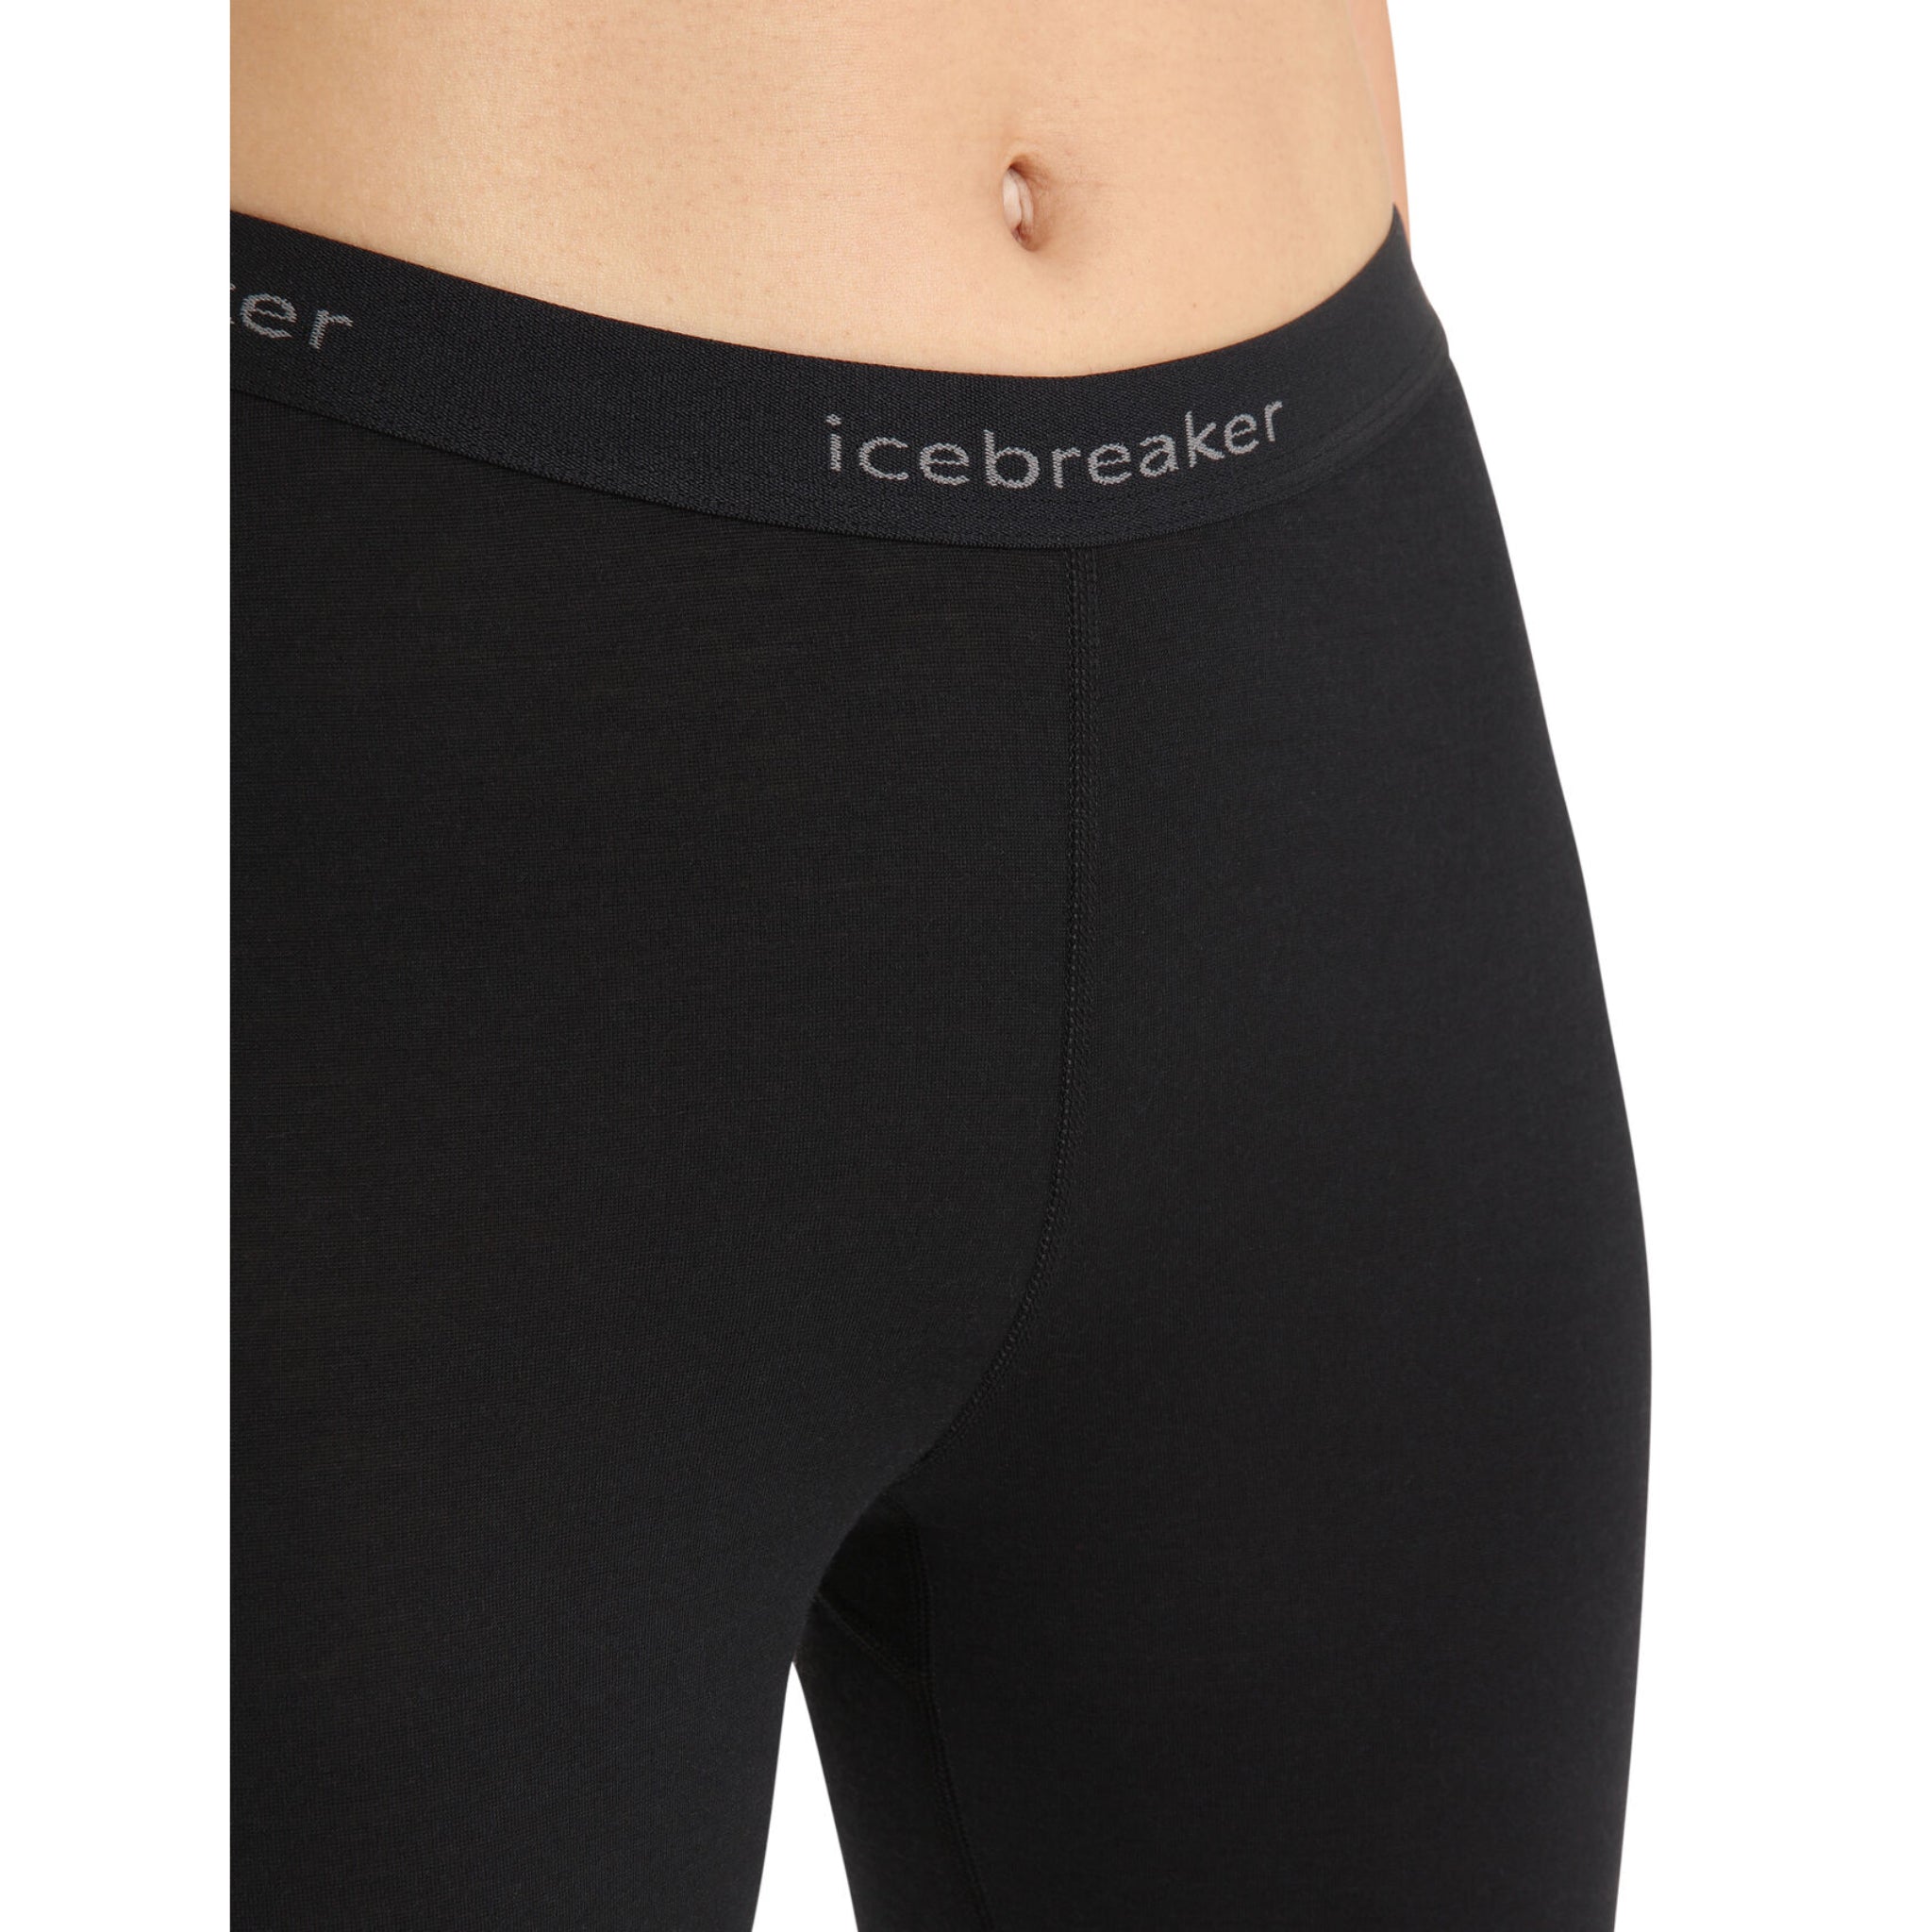 Icebreaker Womens 200 Oasis Thermal Leggings - Black